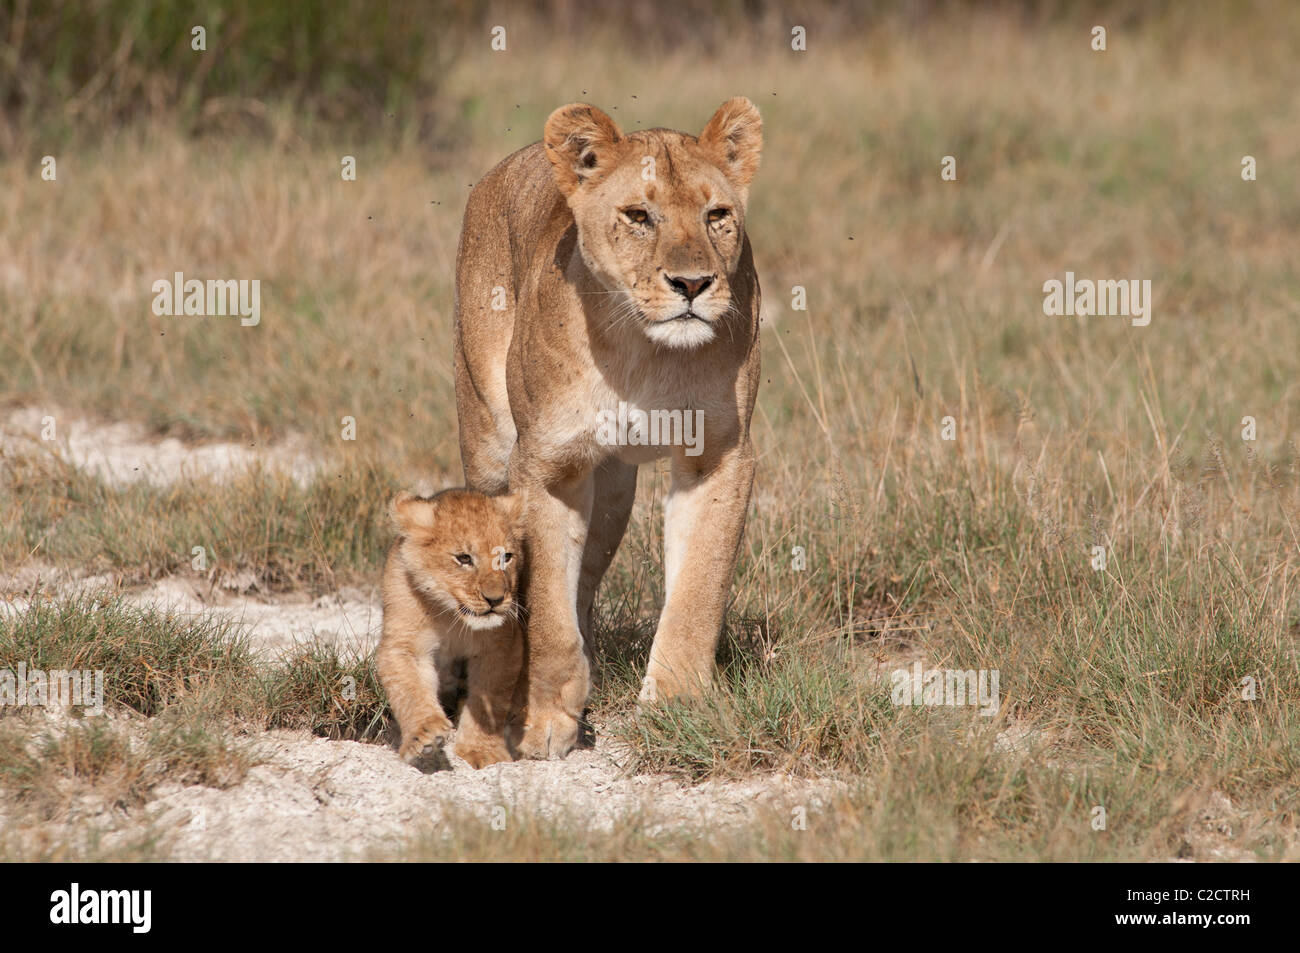 Fotografía de Stock de un cachorro de león caminando delante de su madre. Foto de stock